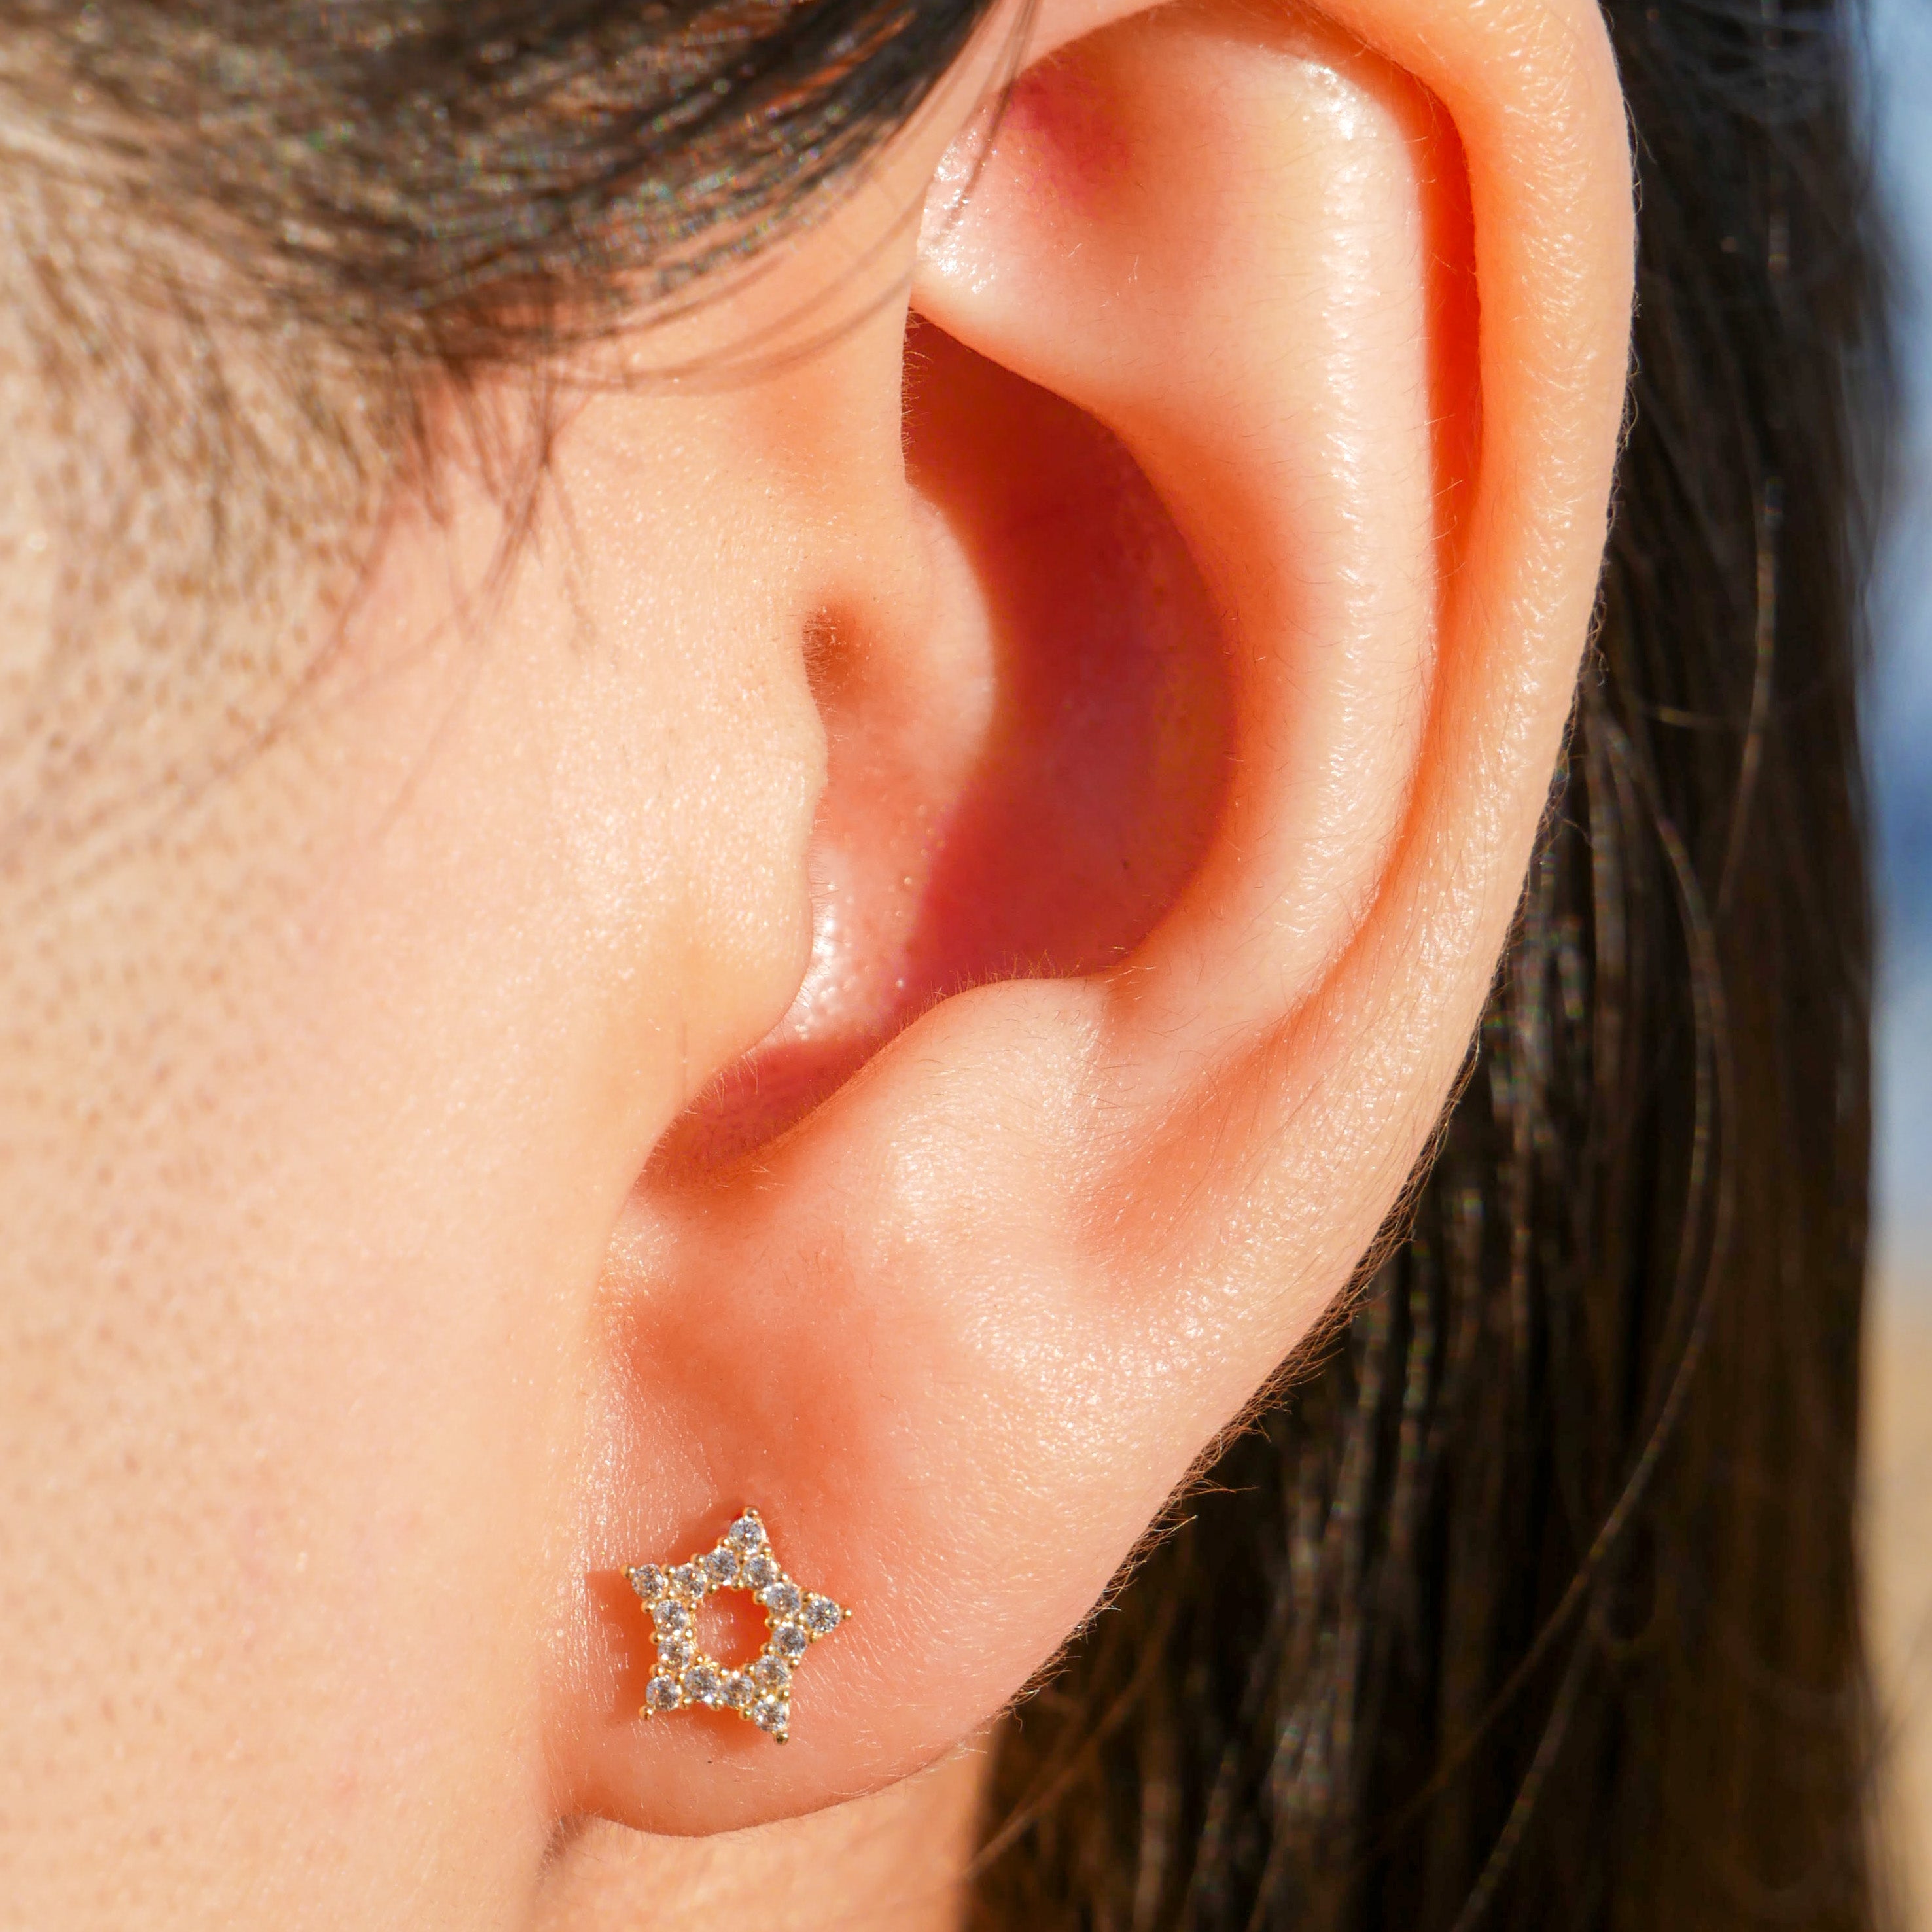 Open Star Stud Earrings